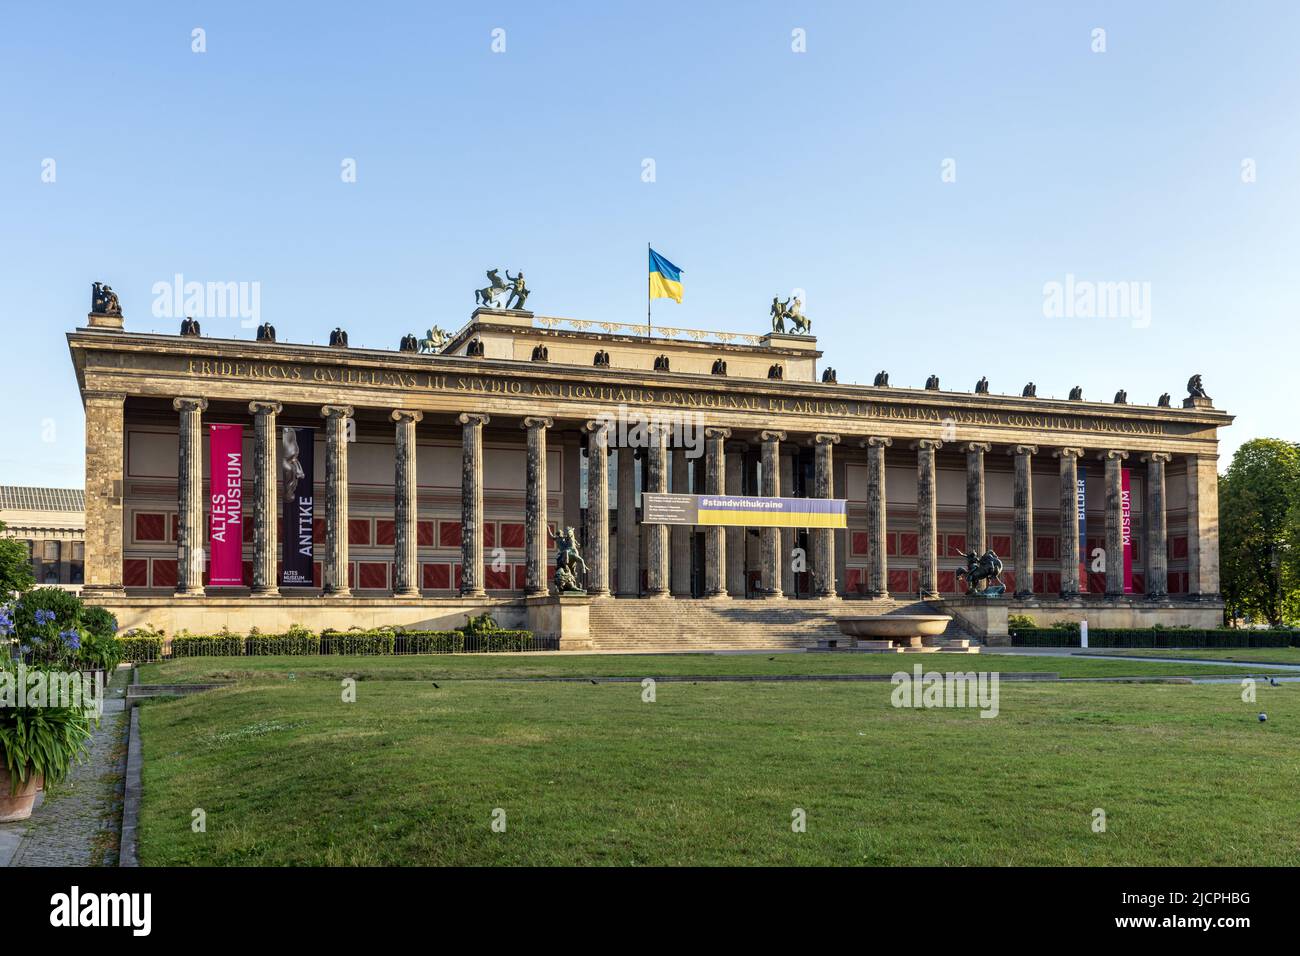 L'ancien musée (Altes Museum) a été construit de 1825 à 1830 par Karl Friedrich Schinkel dans le style du classicisme, Berlin, Allemagne. Banque D'Images